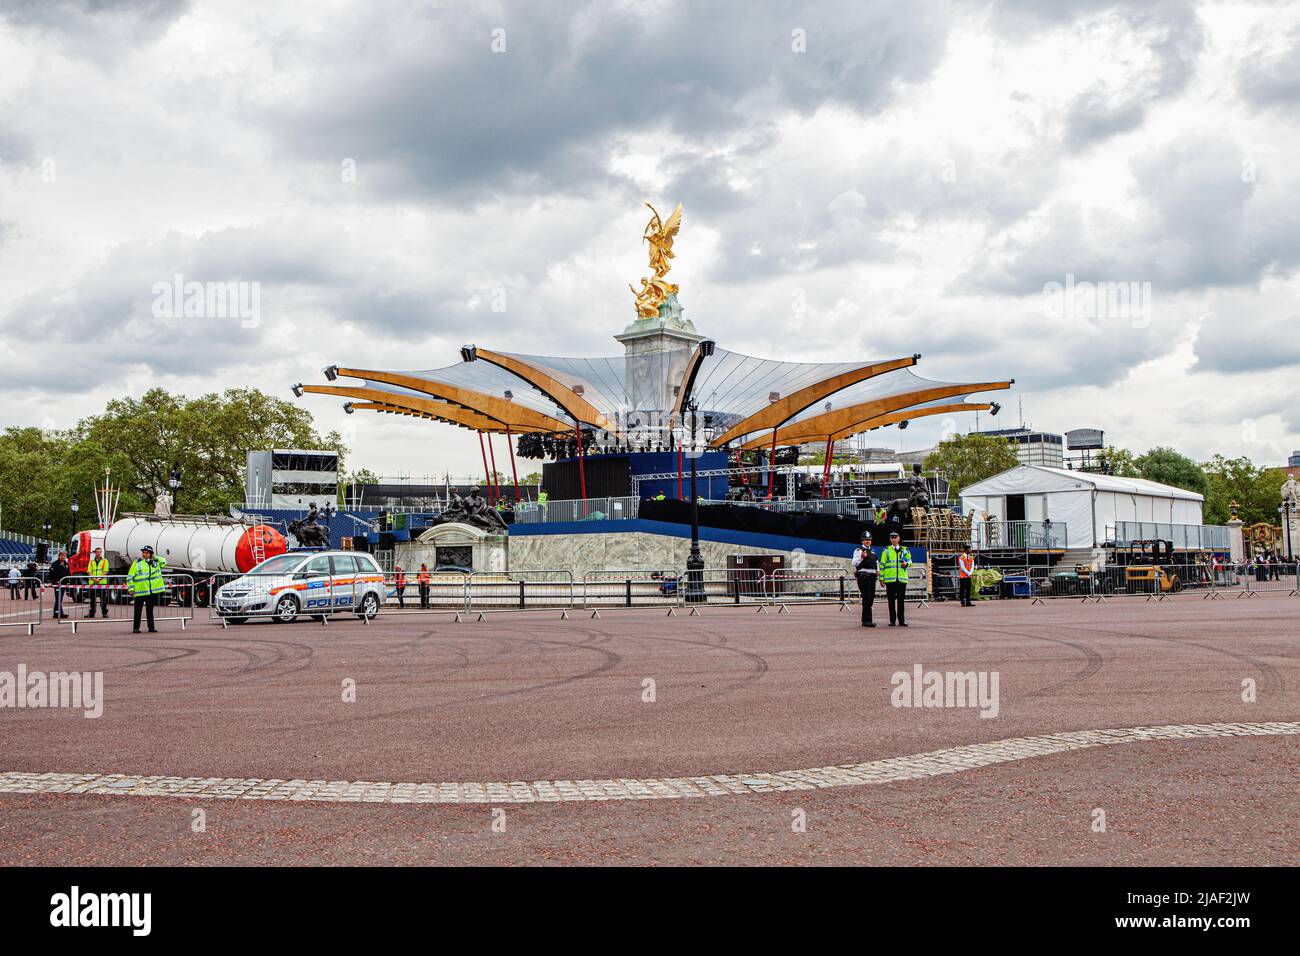 Reino Unido, Londres - 1st de junio de 2012: Escenario para el concierto de Jubileo junto al monumento conmemorativo de la Reina Victoria de oro. Los preparativos están en marcha para las celebraciones de fin de semana. Se espera que una gran multitud celebre el Jubileo de Diamante de Su Majestad, la Reina Isabel II Foto de stock